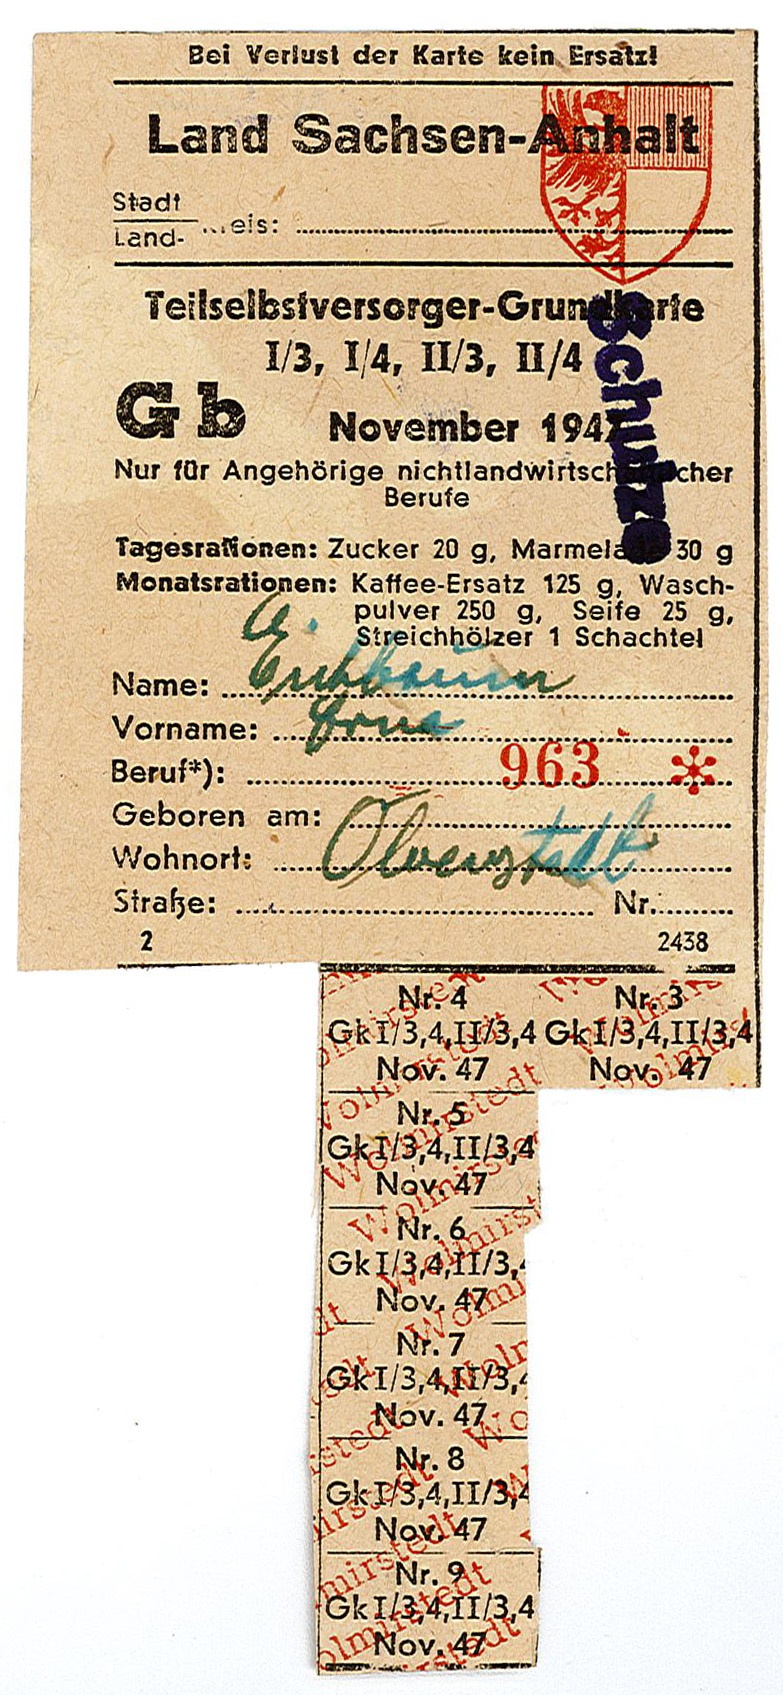 Lebensmittelkarte: Teilselbstversorger-Grundkarte für Angehörige nichtlandwirtschaftlicher Berufe, November 1947 (Museum Wolmirstedt RR-F)